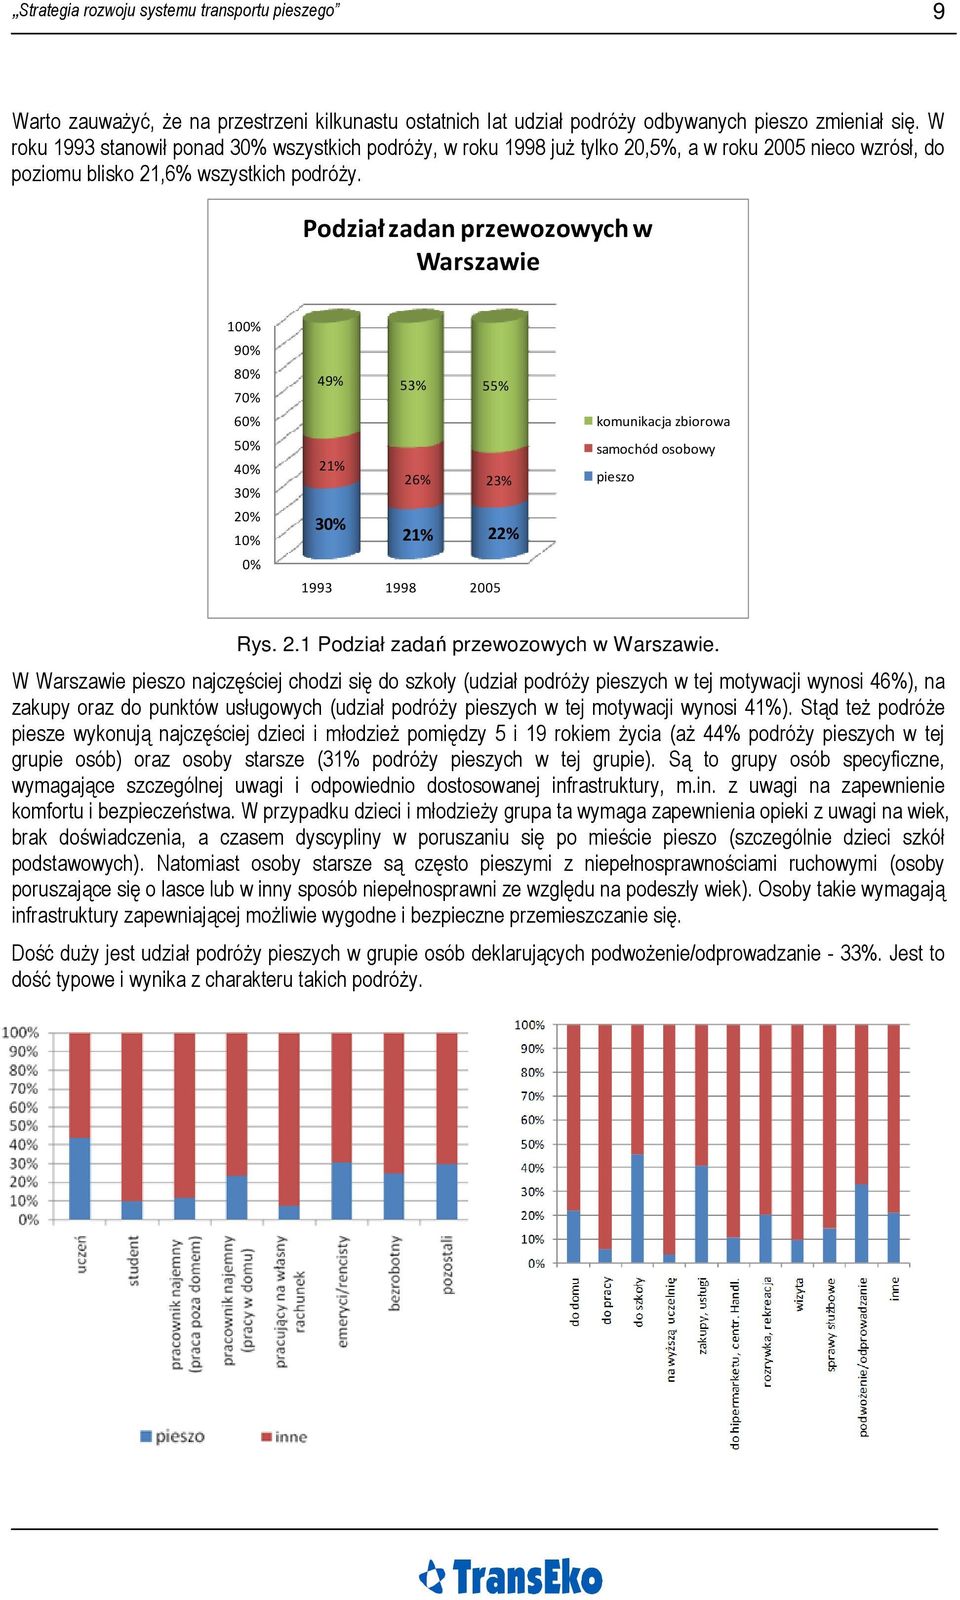 Podział zadan przewozowych w Warszawie 100% 90% 80% 70% 60% 50% 40% 30% 20% 10% 0% 49% 53% 55% 21% 26% 23% 30% 21% 22% 1993 1998 2005 komunikacja zbiorowa samochód osobowy pieszo Rys. 2.1 Podział zadań przewozowych w Warszawie.